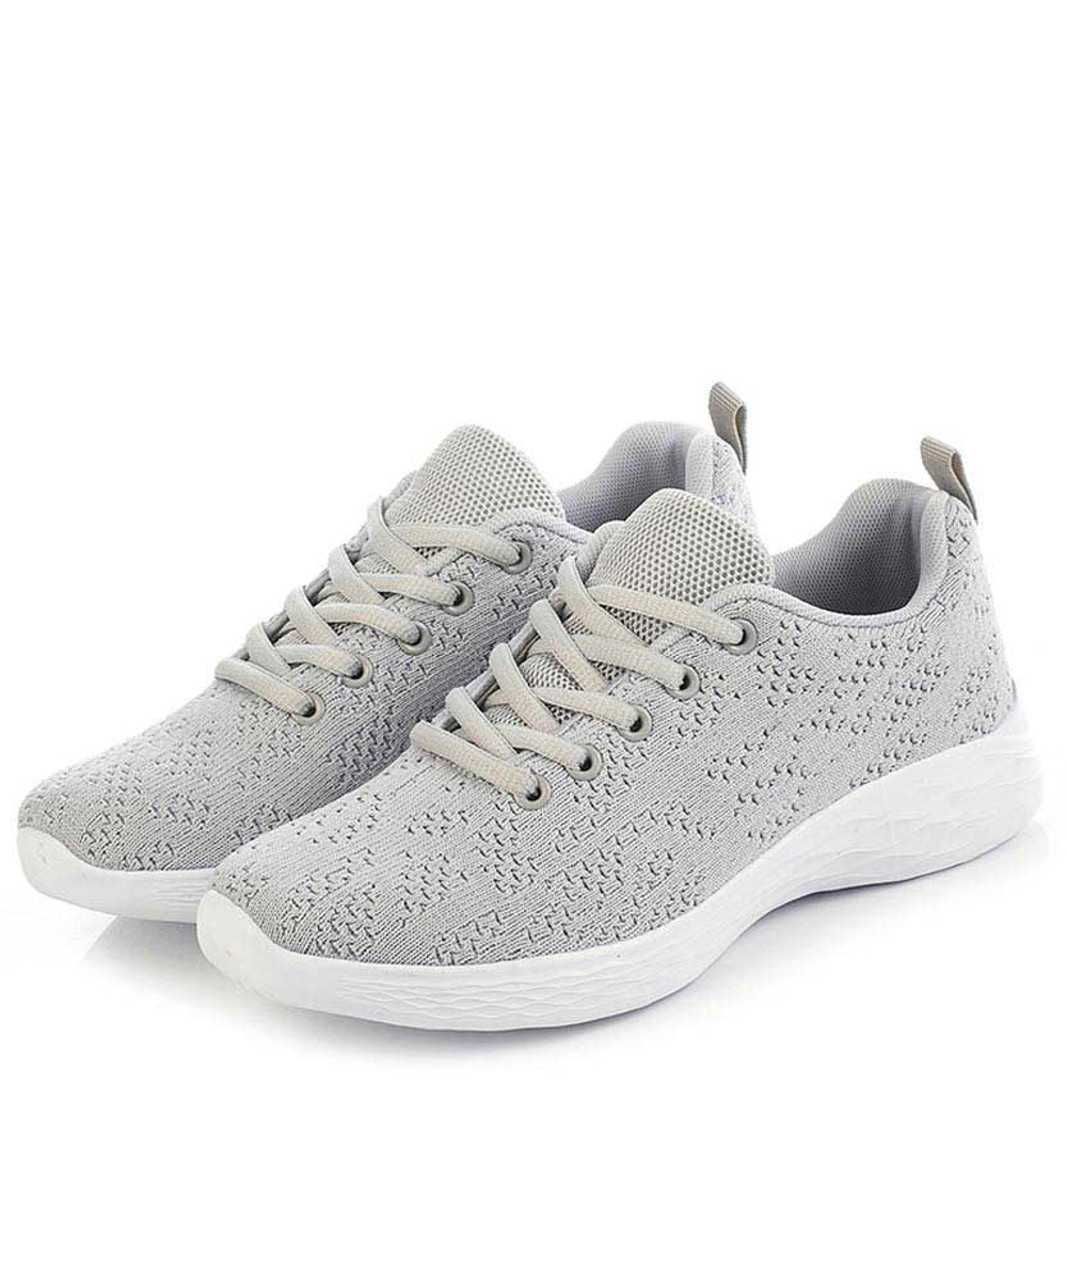 Grey flyknit texture pattern shoe sneaker | Womens shoe sneakers online ...